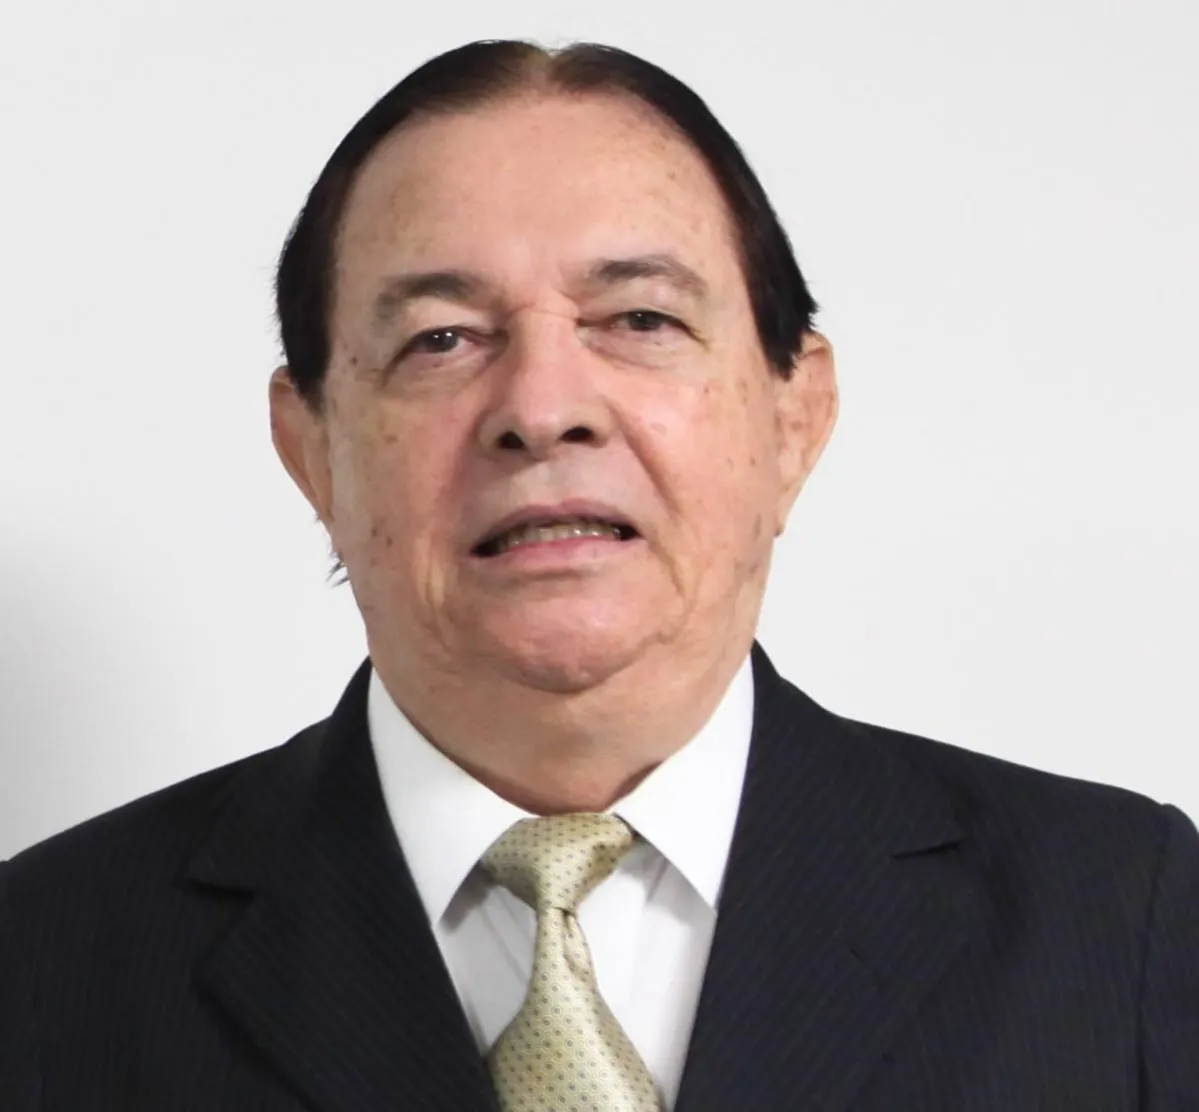 Thomas Bacellar é ex-presidente da OAB-BA | Foto: Divulgação